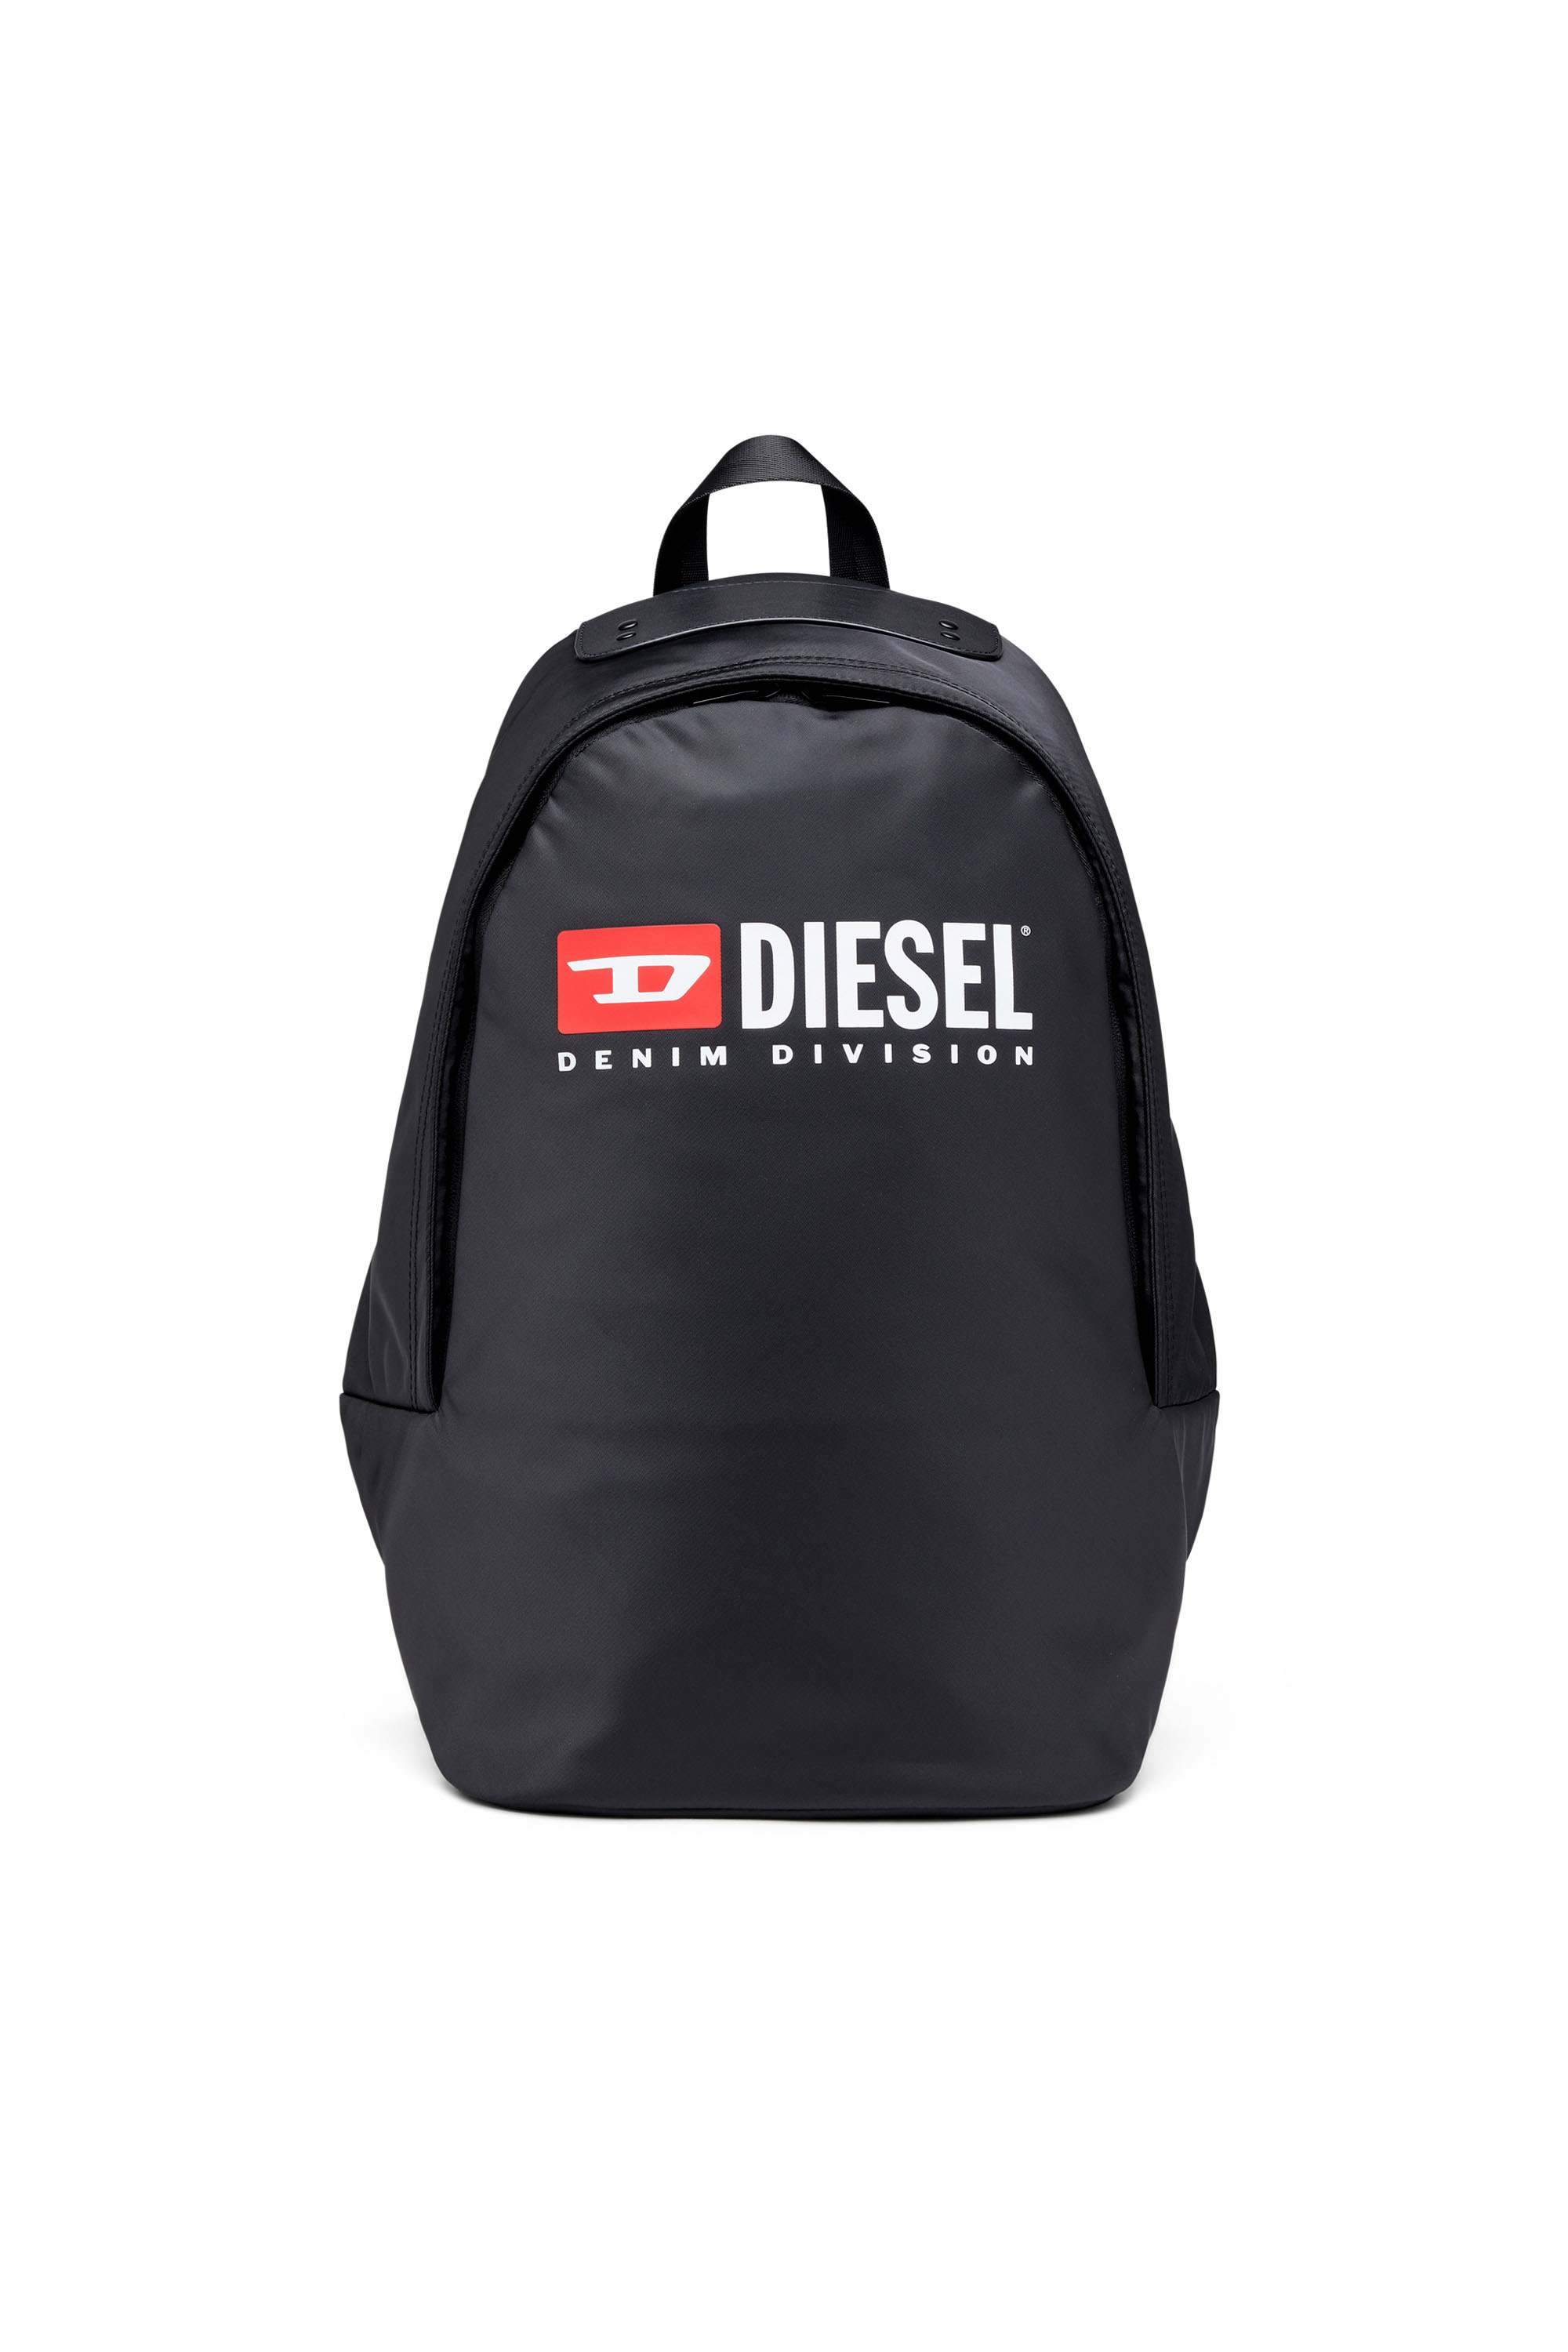 Diesel - Rinke Backpack - Rucksack aus technisch veredeltem Stoff mit Logo - Rucksäcke - Herren - Schwarz